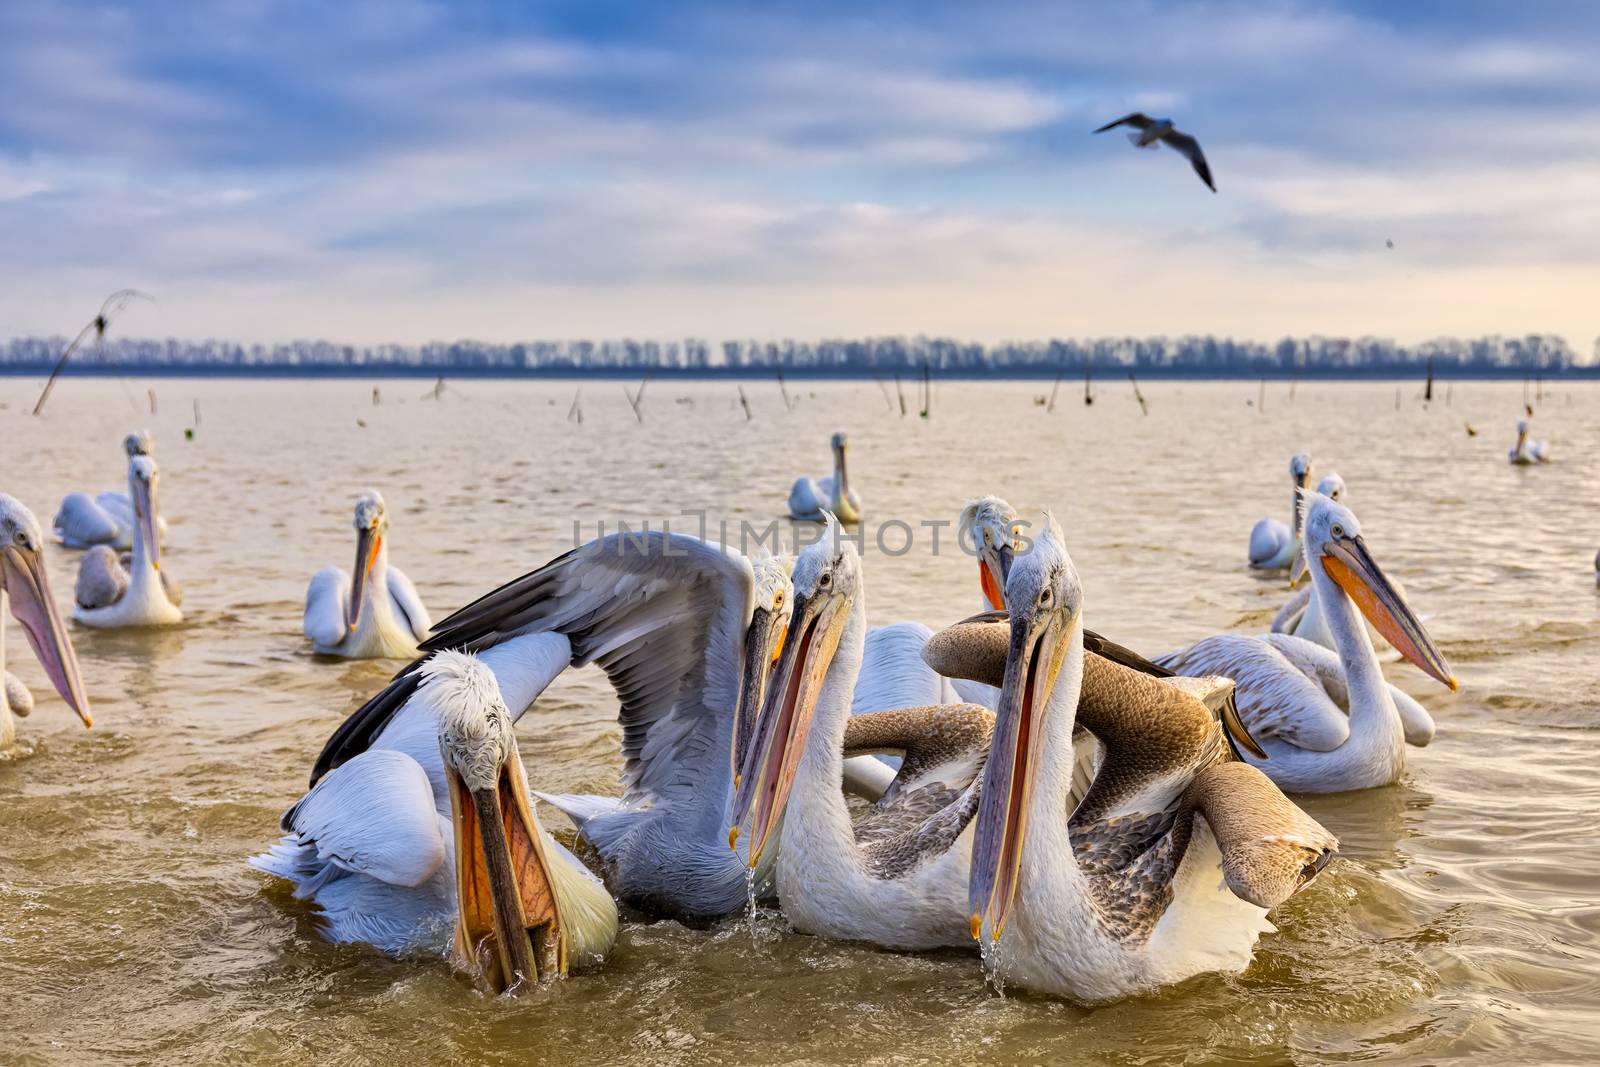 pelikans in Kerkini Lake in northern Greece by ververidis